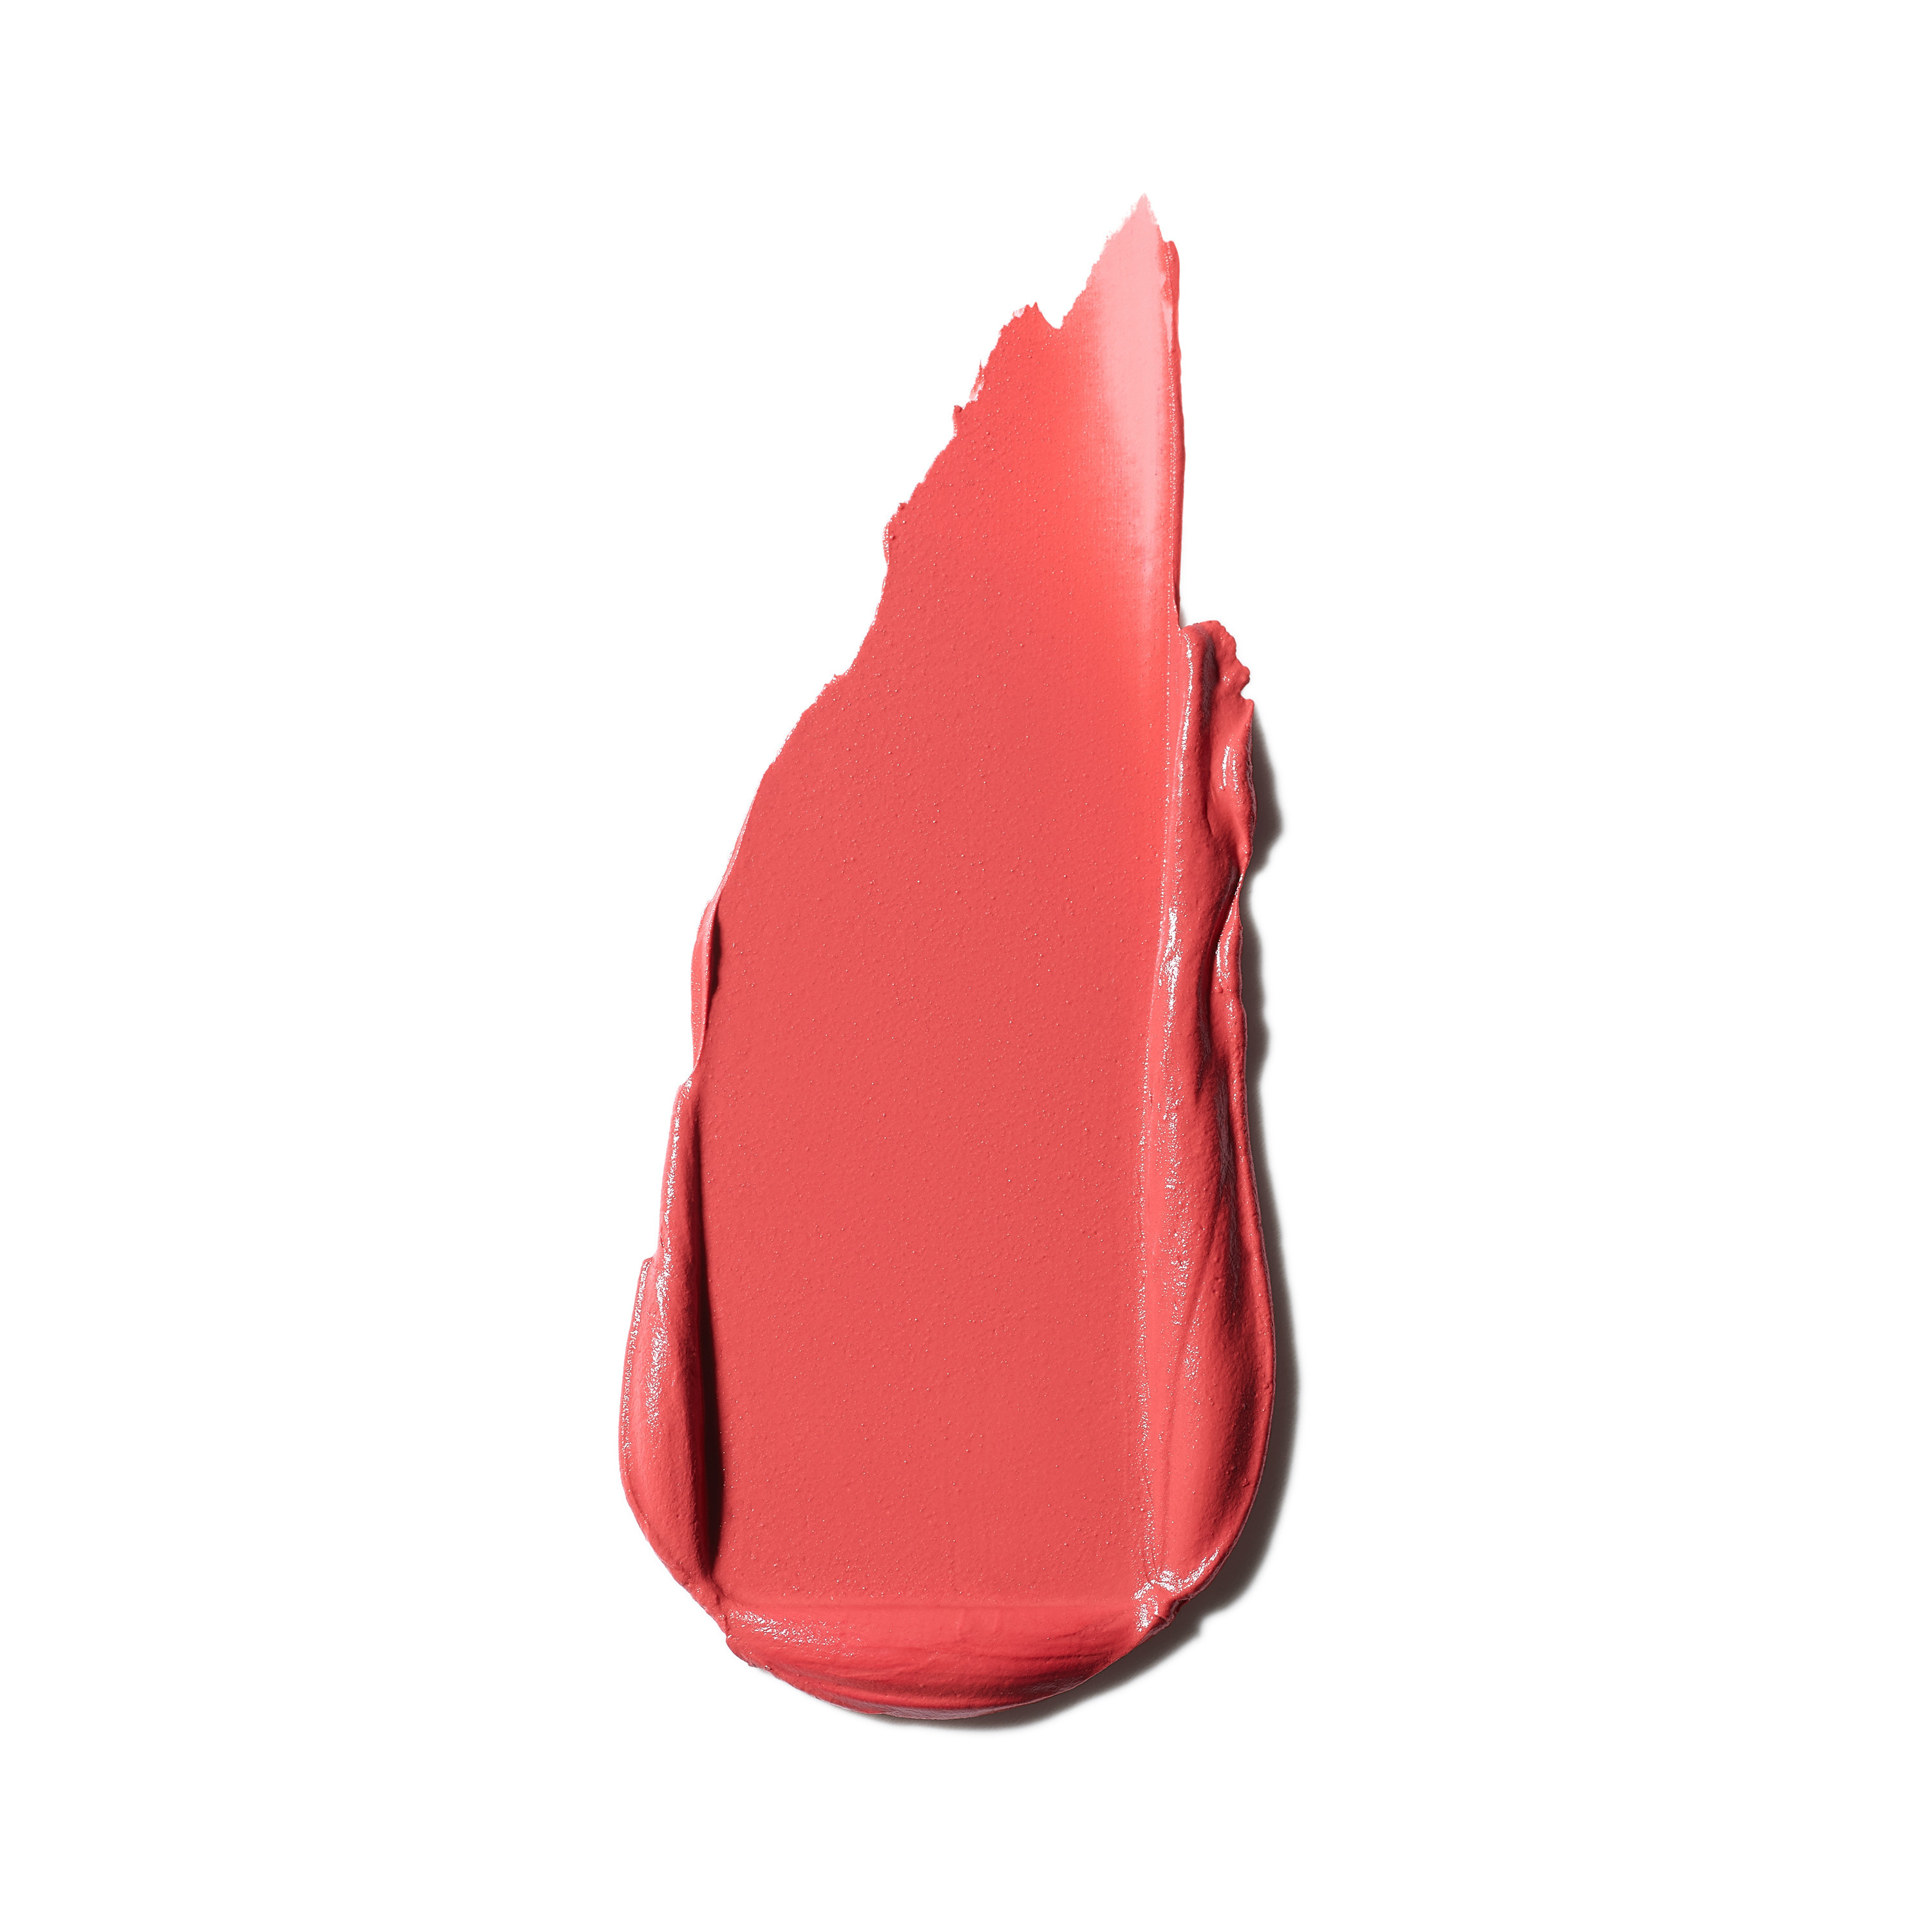 Powder kiss velvet blur slim stick - Sheer outrage, Light Pink, large image number 1